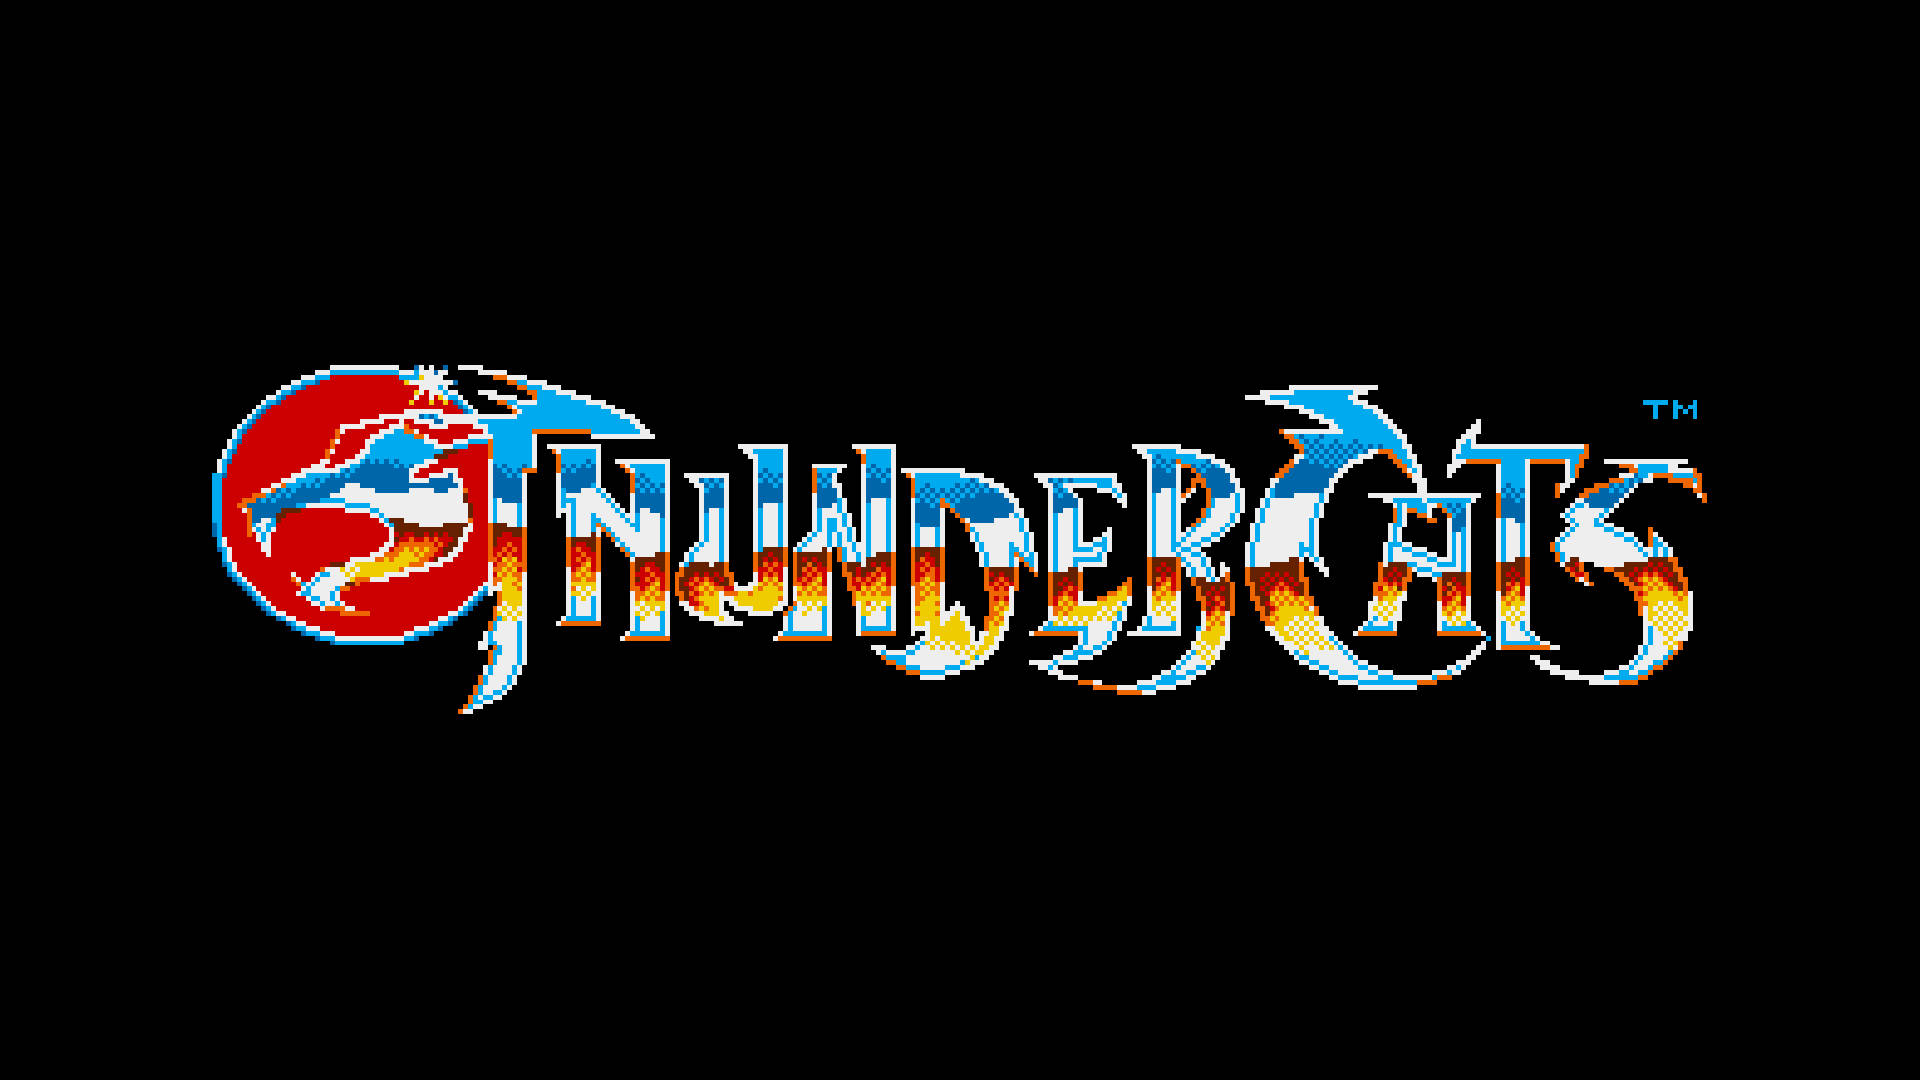 Thundercats 1985 Tv Series Logo